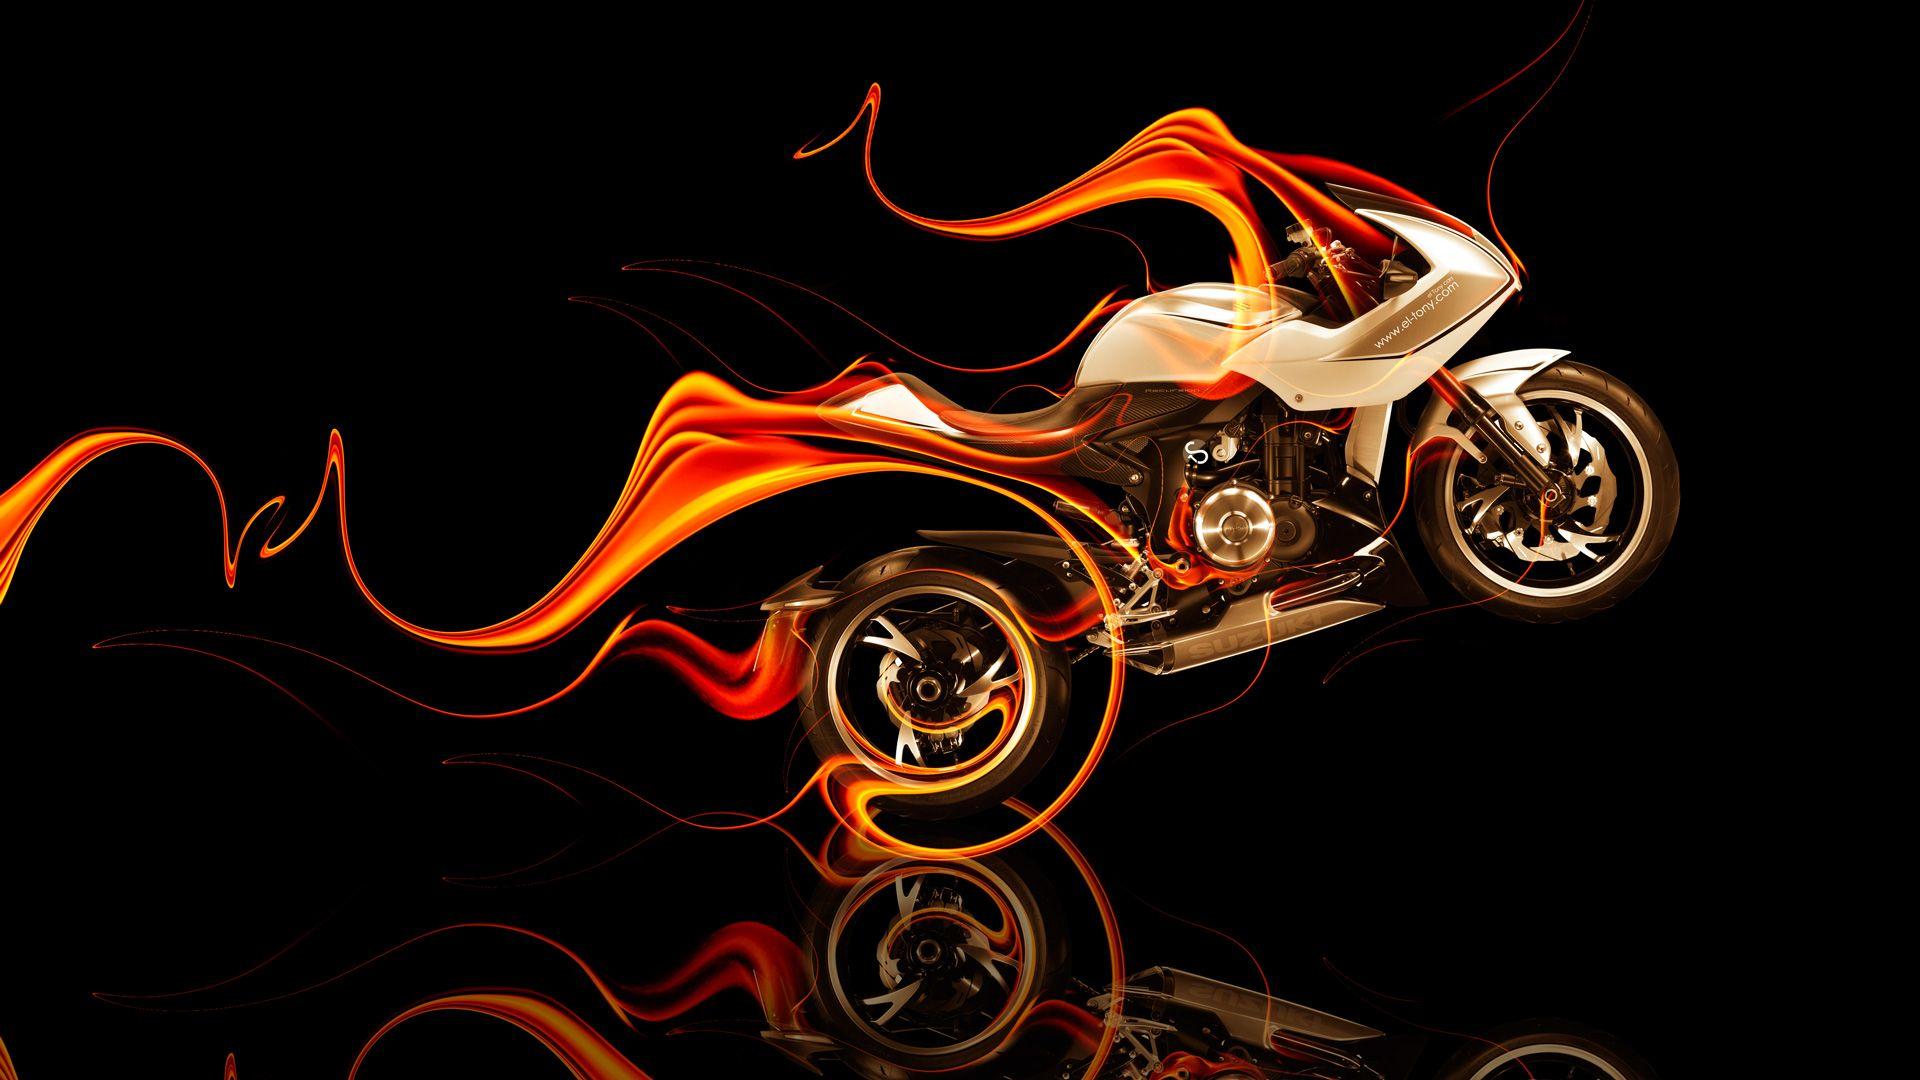 Suzuki Recursion Side Fire Abstract Bike 2014